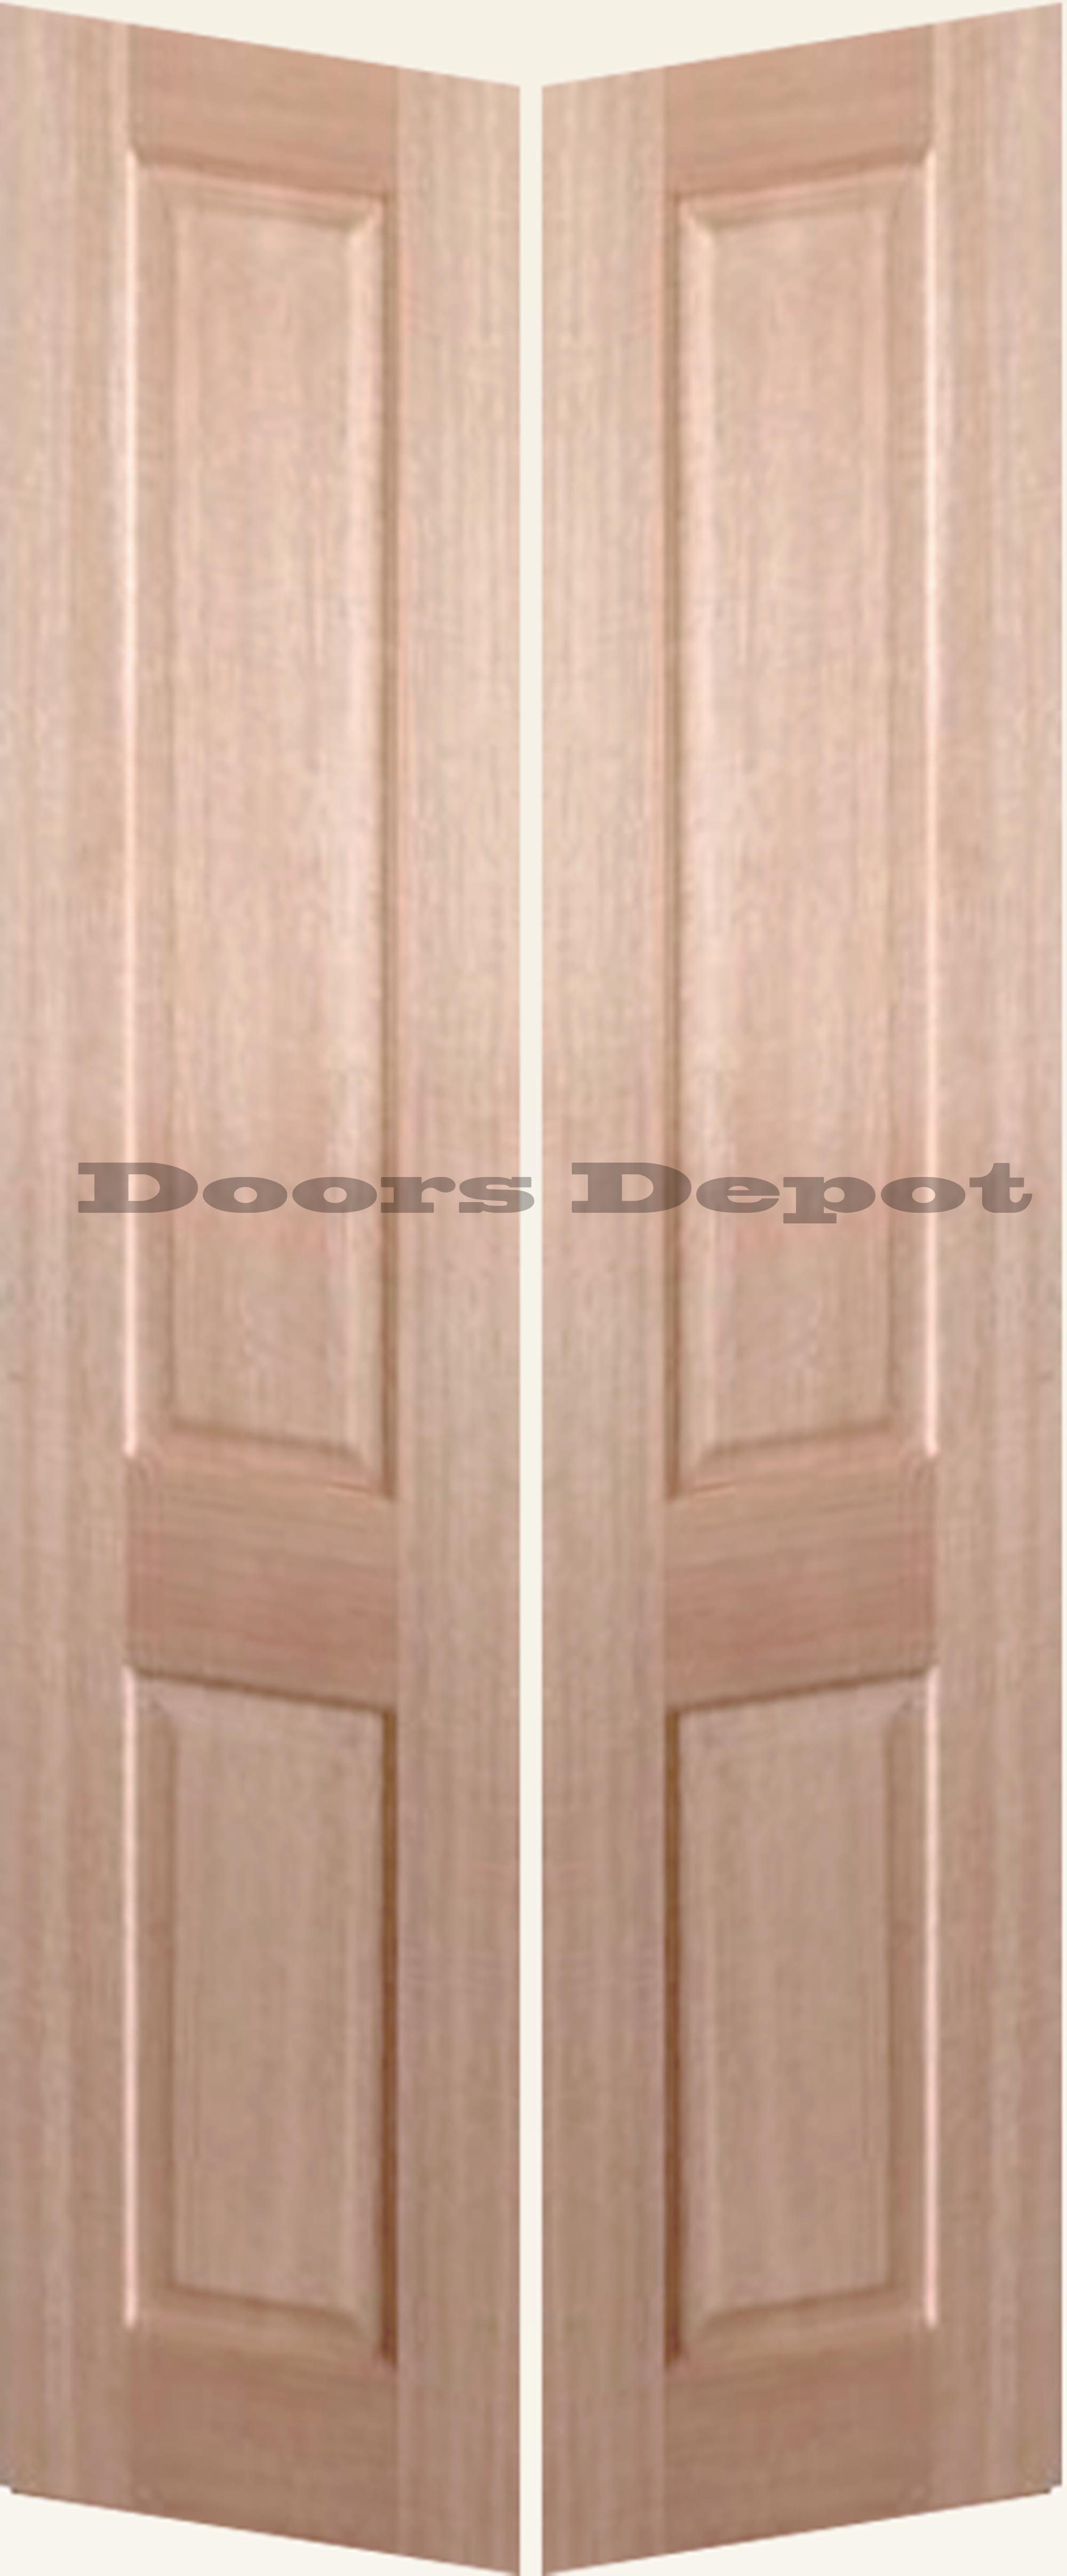 intrim-custom-double-rebate-door-jamb-intrim-mouldings-door-jamb